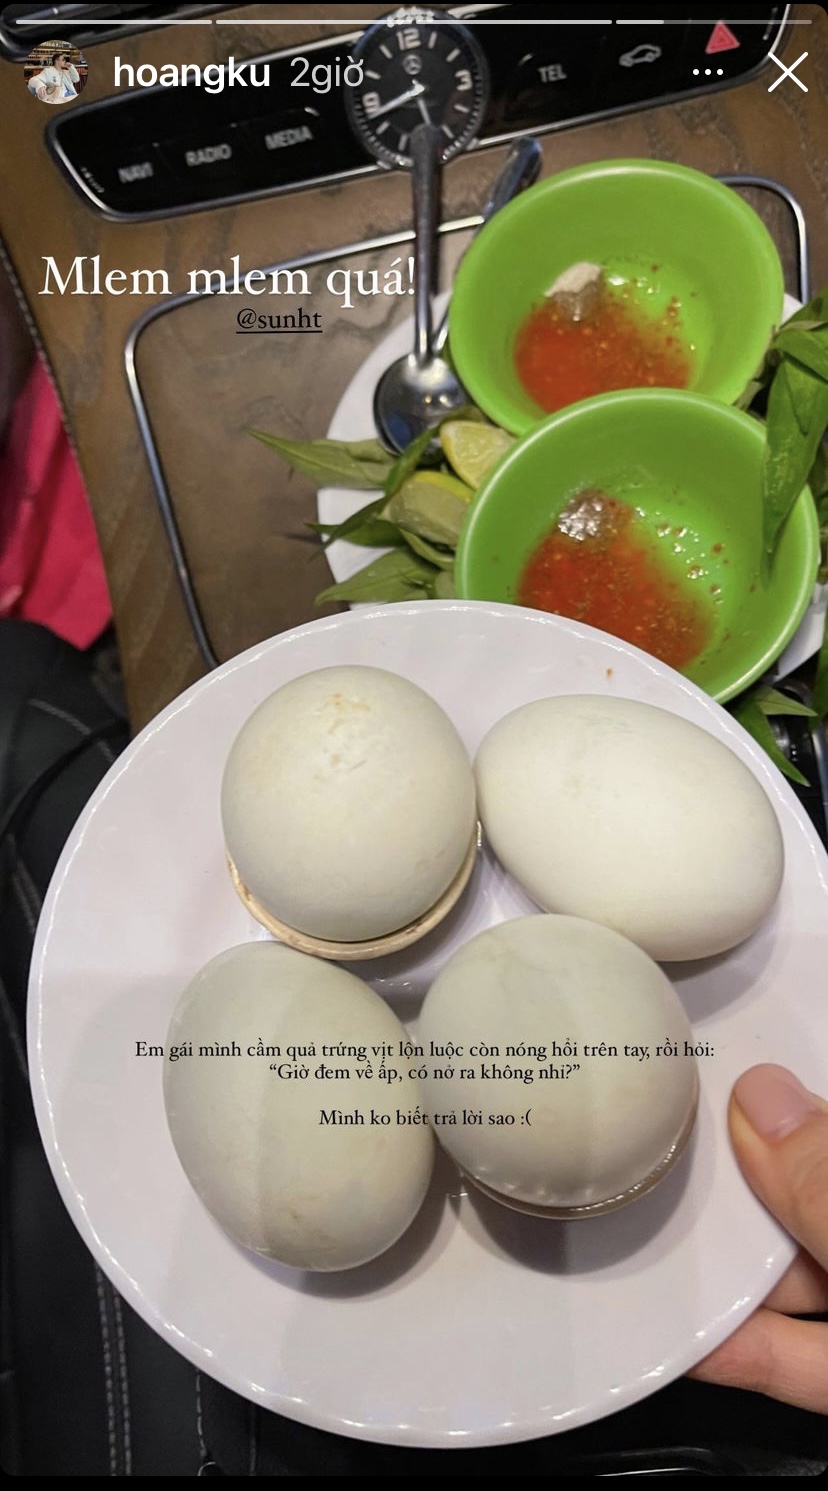 Hoàng Ku và Sun Ht hôm nay có trứng vịt lộn luộc nóng hổi ăn cùng rau răm và tương ớt cay tê.